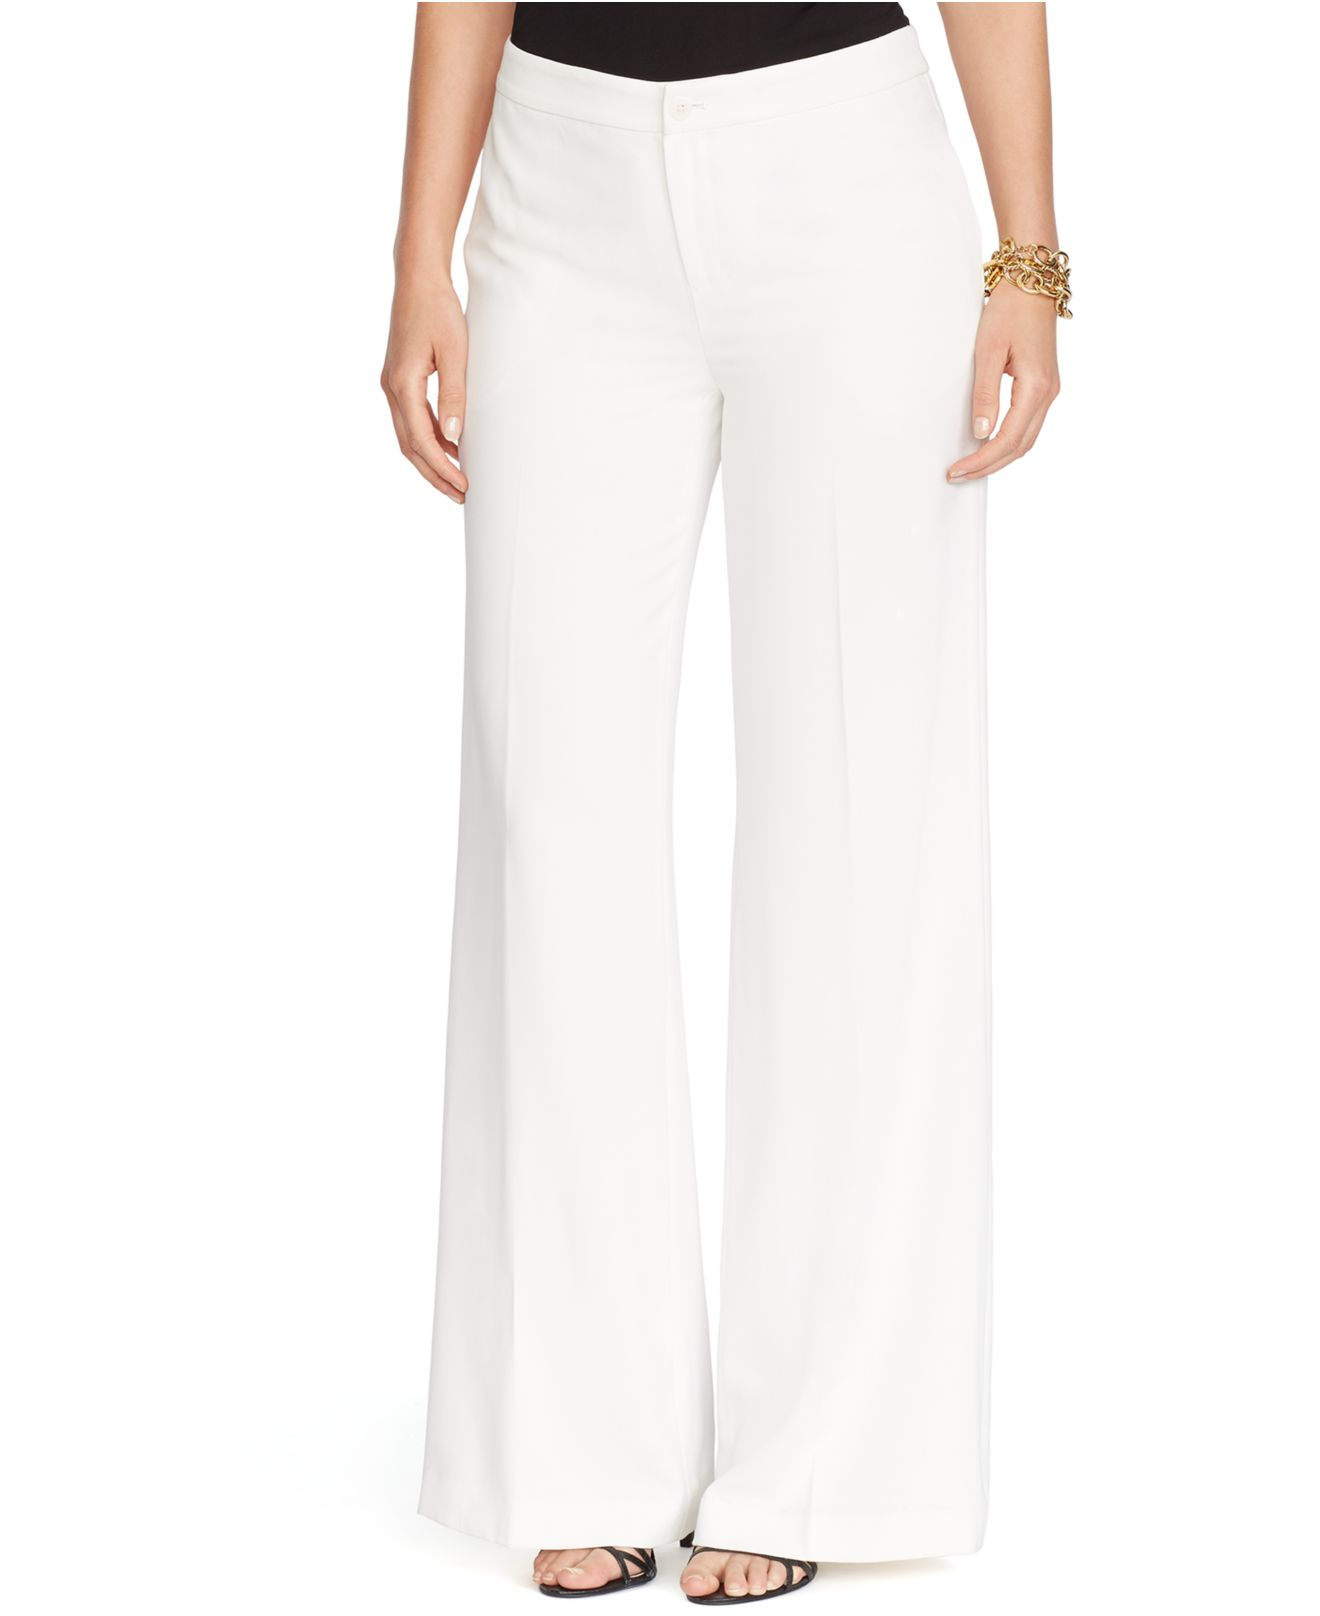 Lyst - Lauren By Ralph Lauren Plus Size Wide-Leg Pants in White